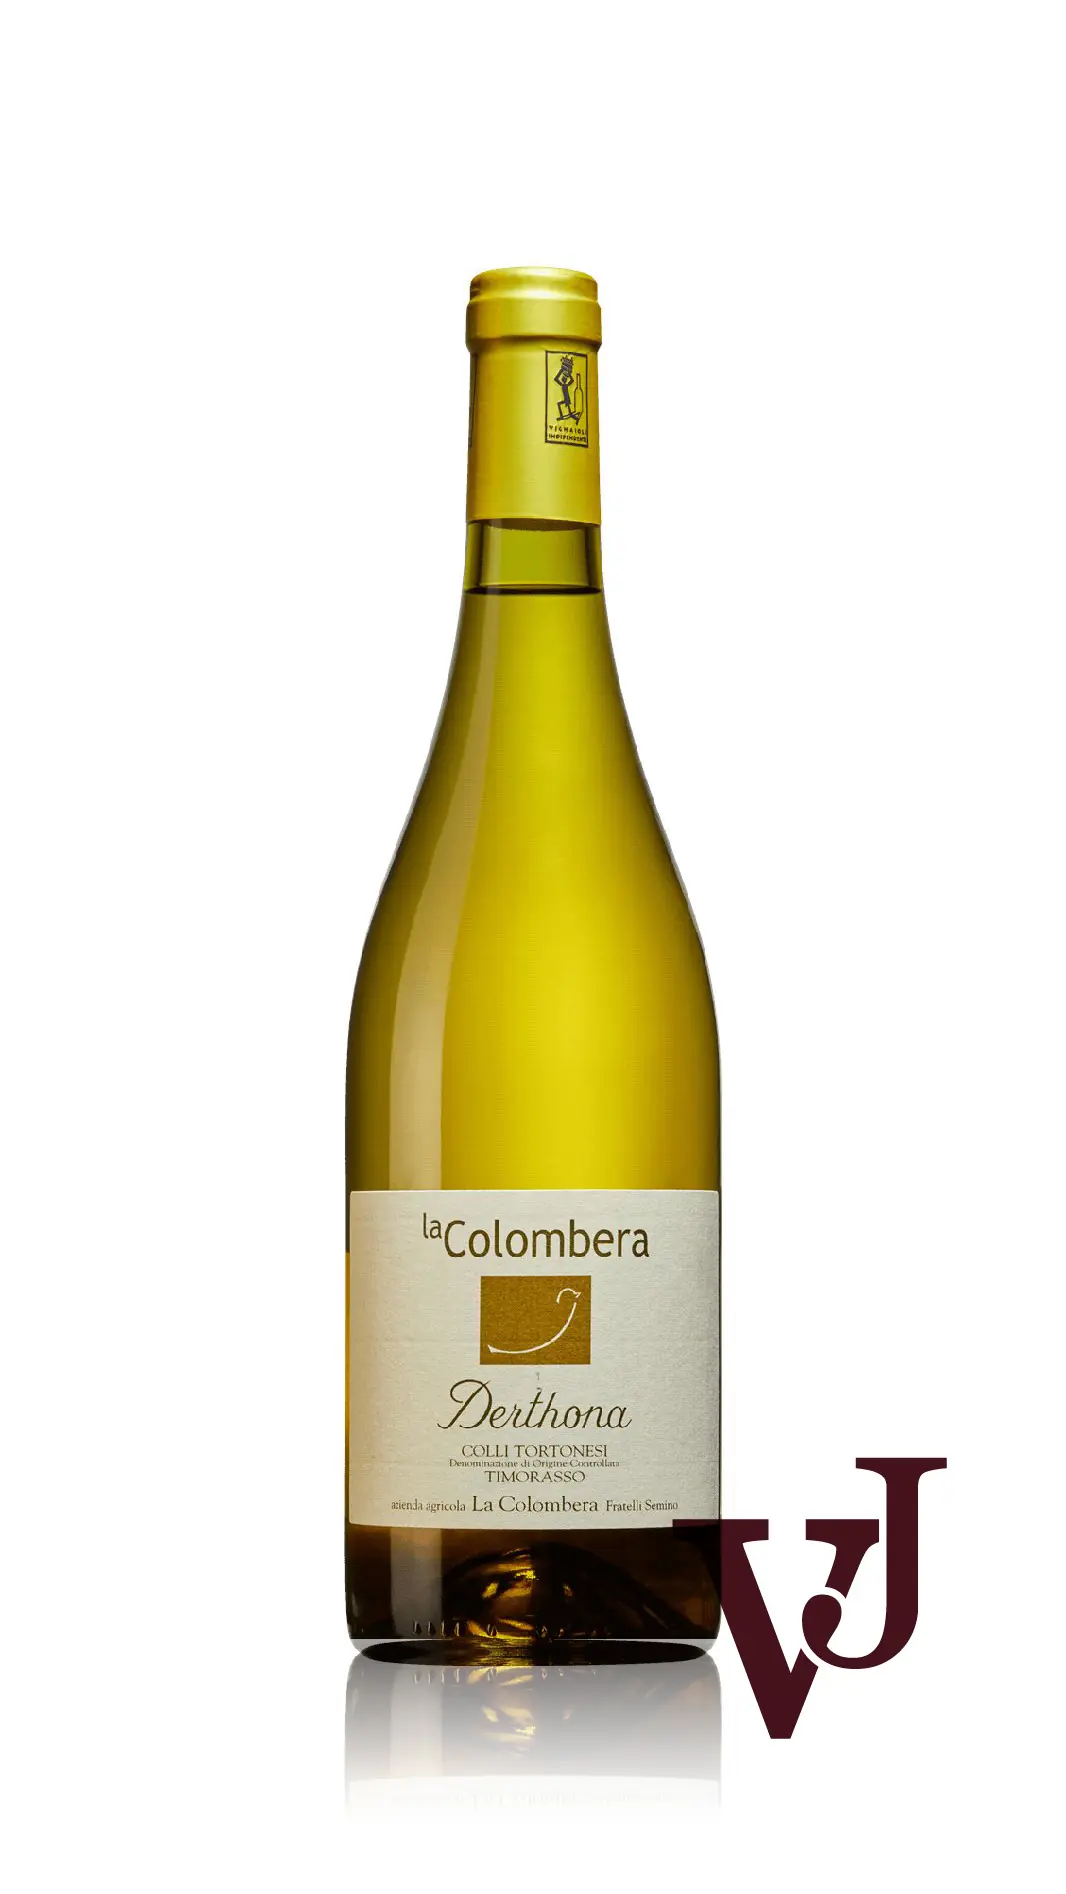 Vitt Vin - Derthona artikel nummer 9434601 från producenten La Colombera från området Italien - Vinjournalen.se